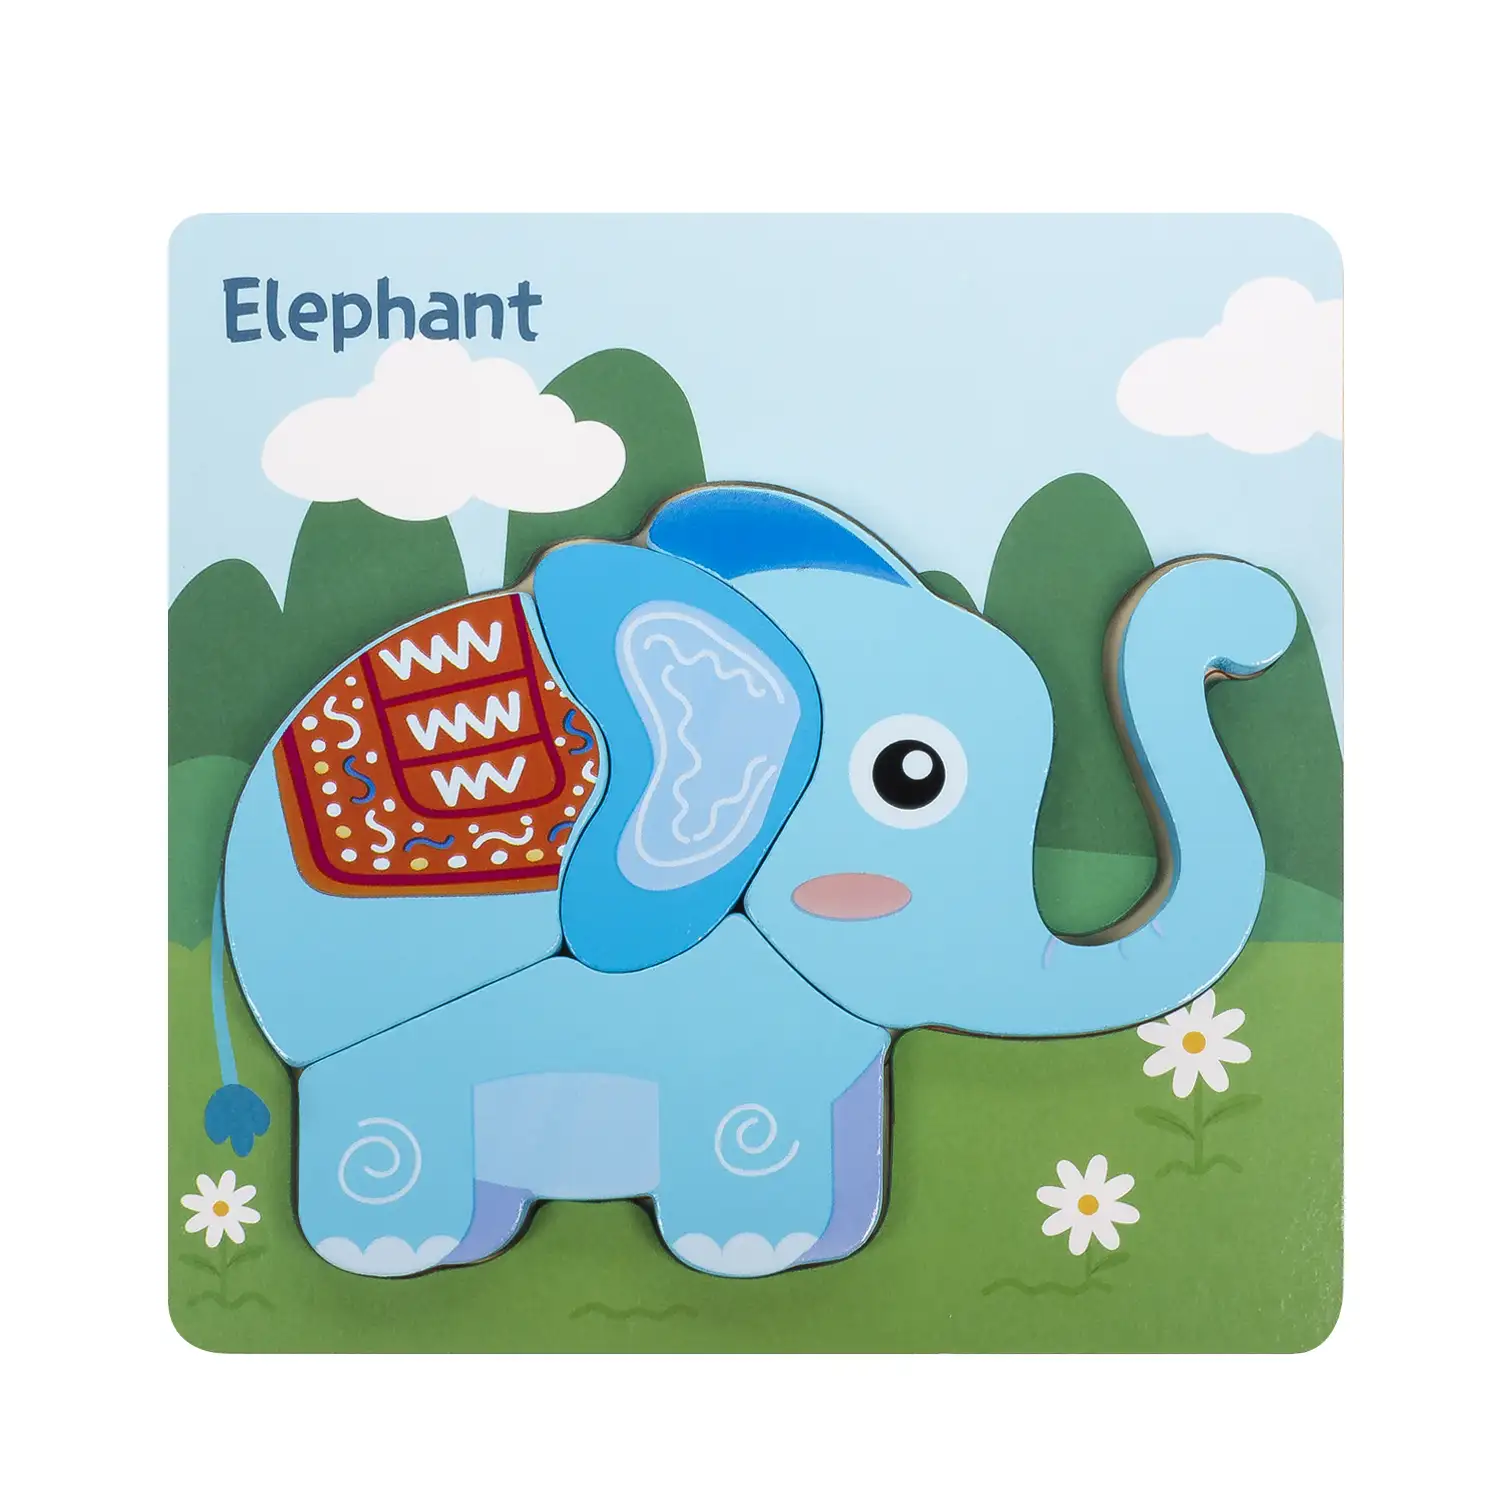 Puzle de madera para niños, de 4 piezas. Diseño elefante.